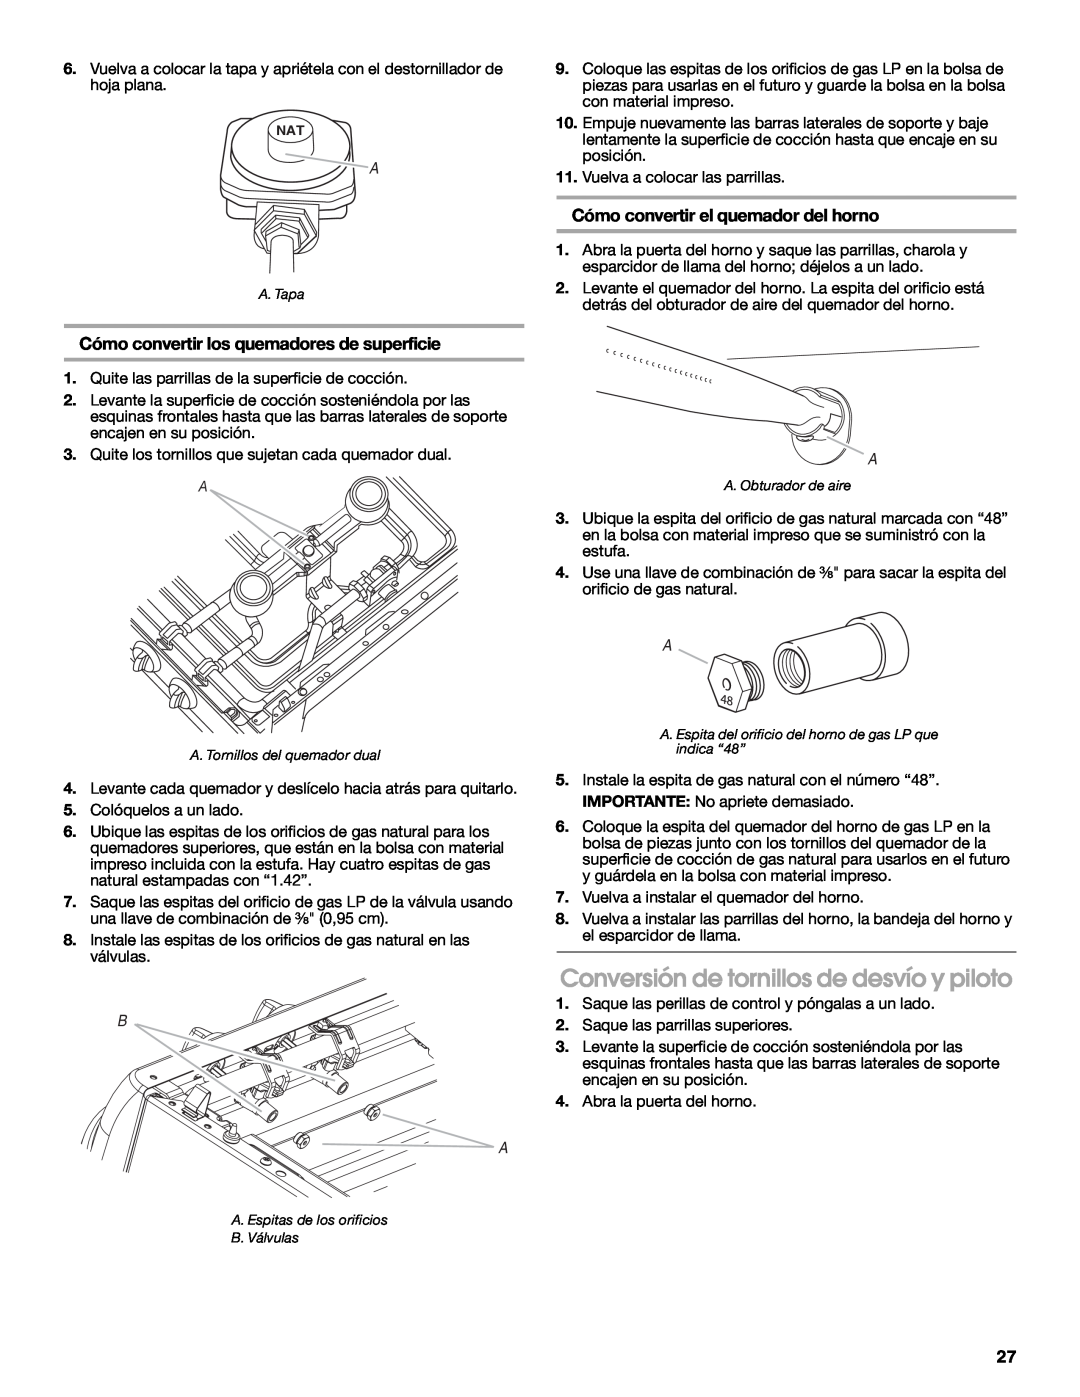 Estate W10121806C Conversión de tornillos de desvío y piloto, Cómo convertir el quemador del horno 